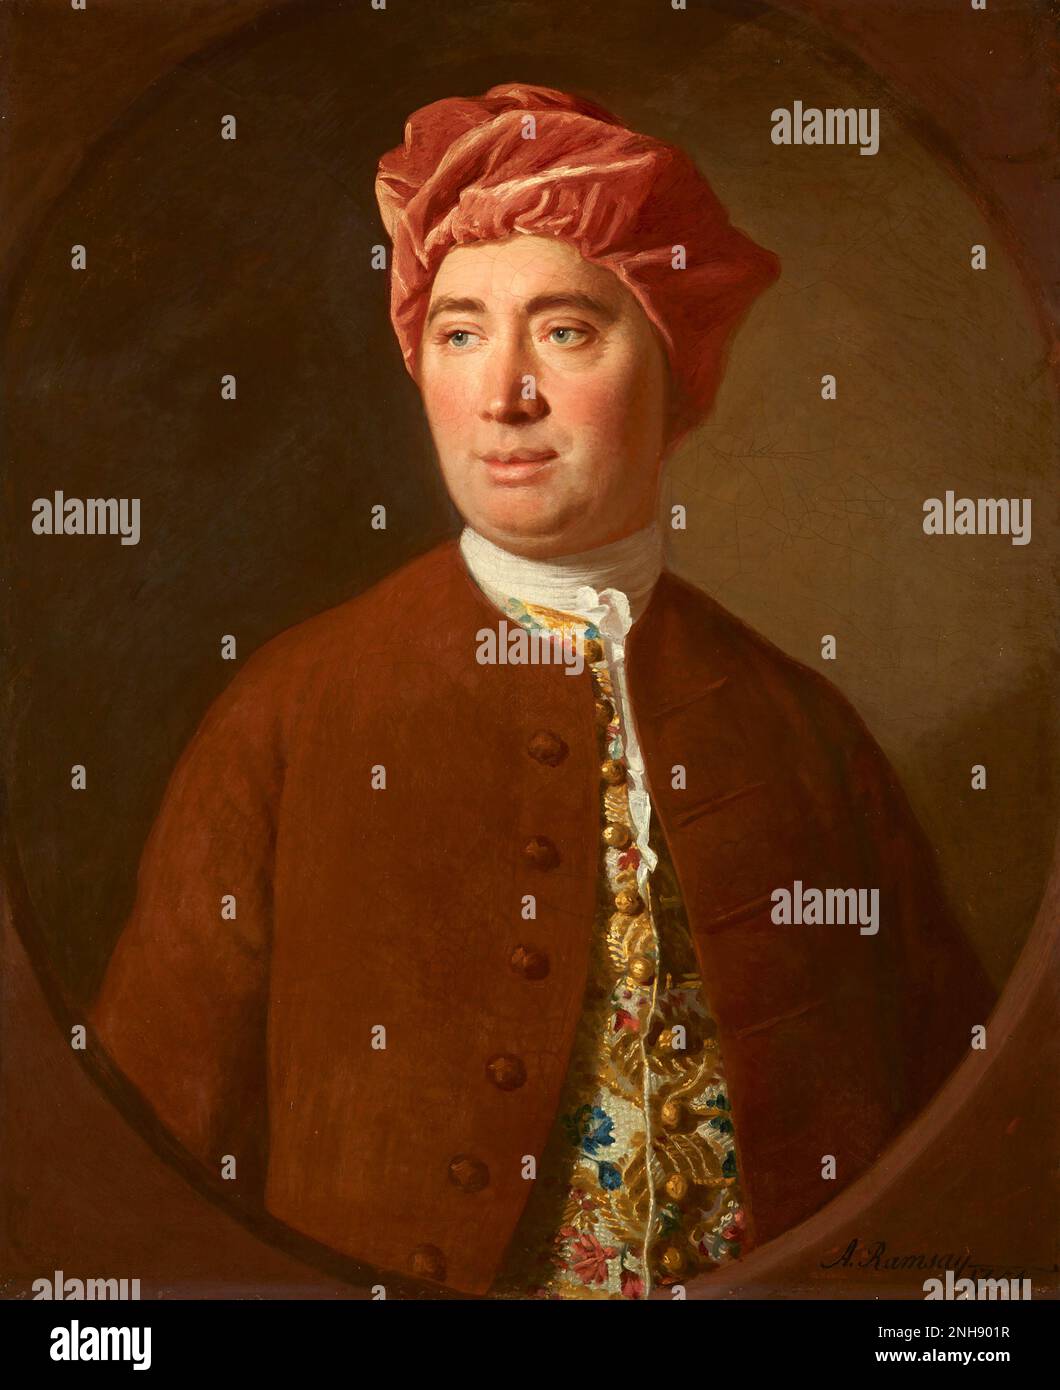 David Hume (1711-1776), schottischer Erleuchtungsphilosoph, Historiker und Ökonom, am besten bekannt für sein äußerst einflussreiches System des philosophischen Empiriismus, Skepsis und Naturalismus. Gemälde von Allan Ramsay (1713-1784), 1754. Stockfoto